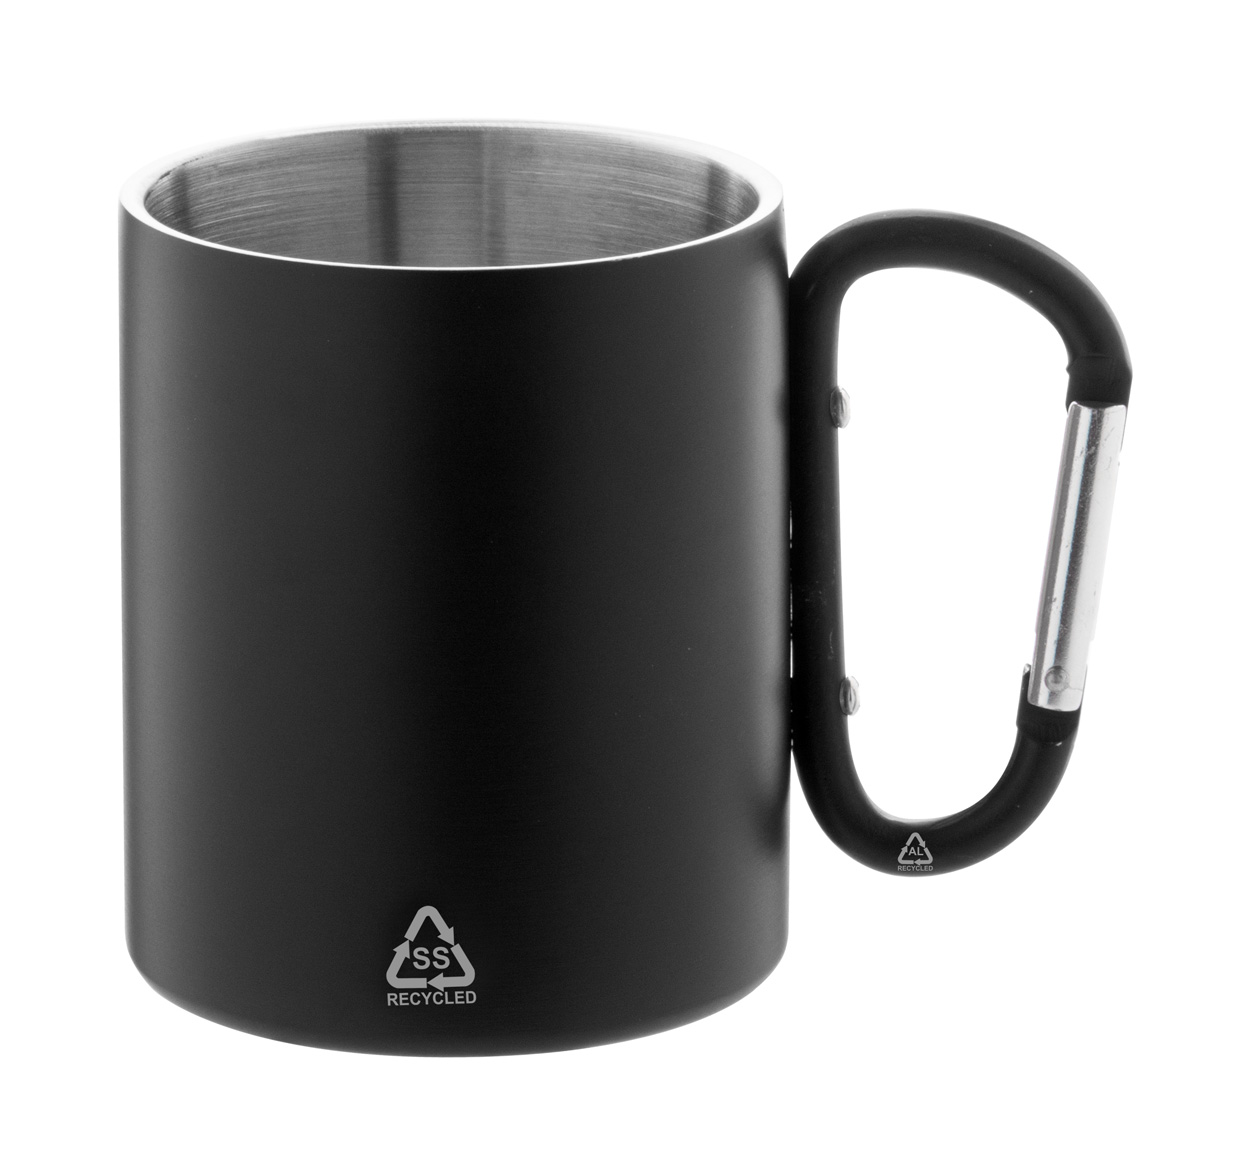 Metal thermo mug ODISHA made of recycled material, 300 ml